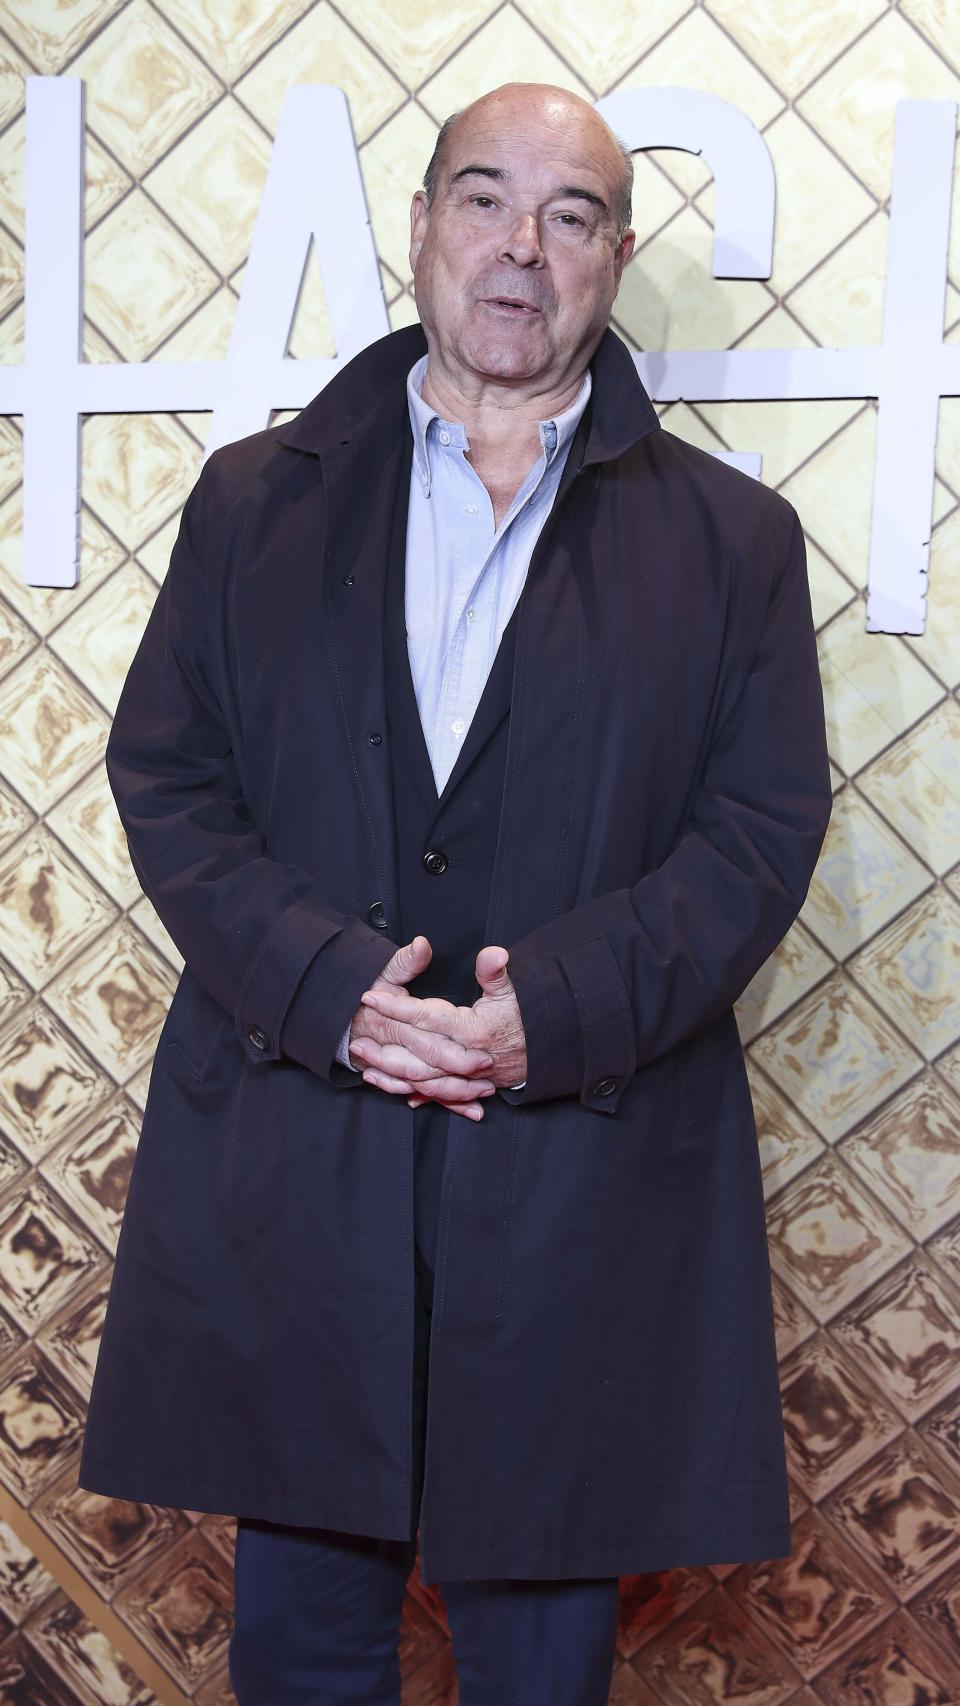 Antonio Fernández Resines en una imagen fechada en octubre de 2019 durante un acto público.